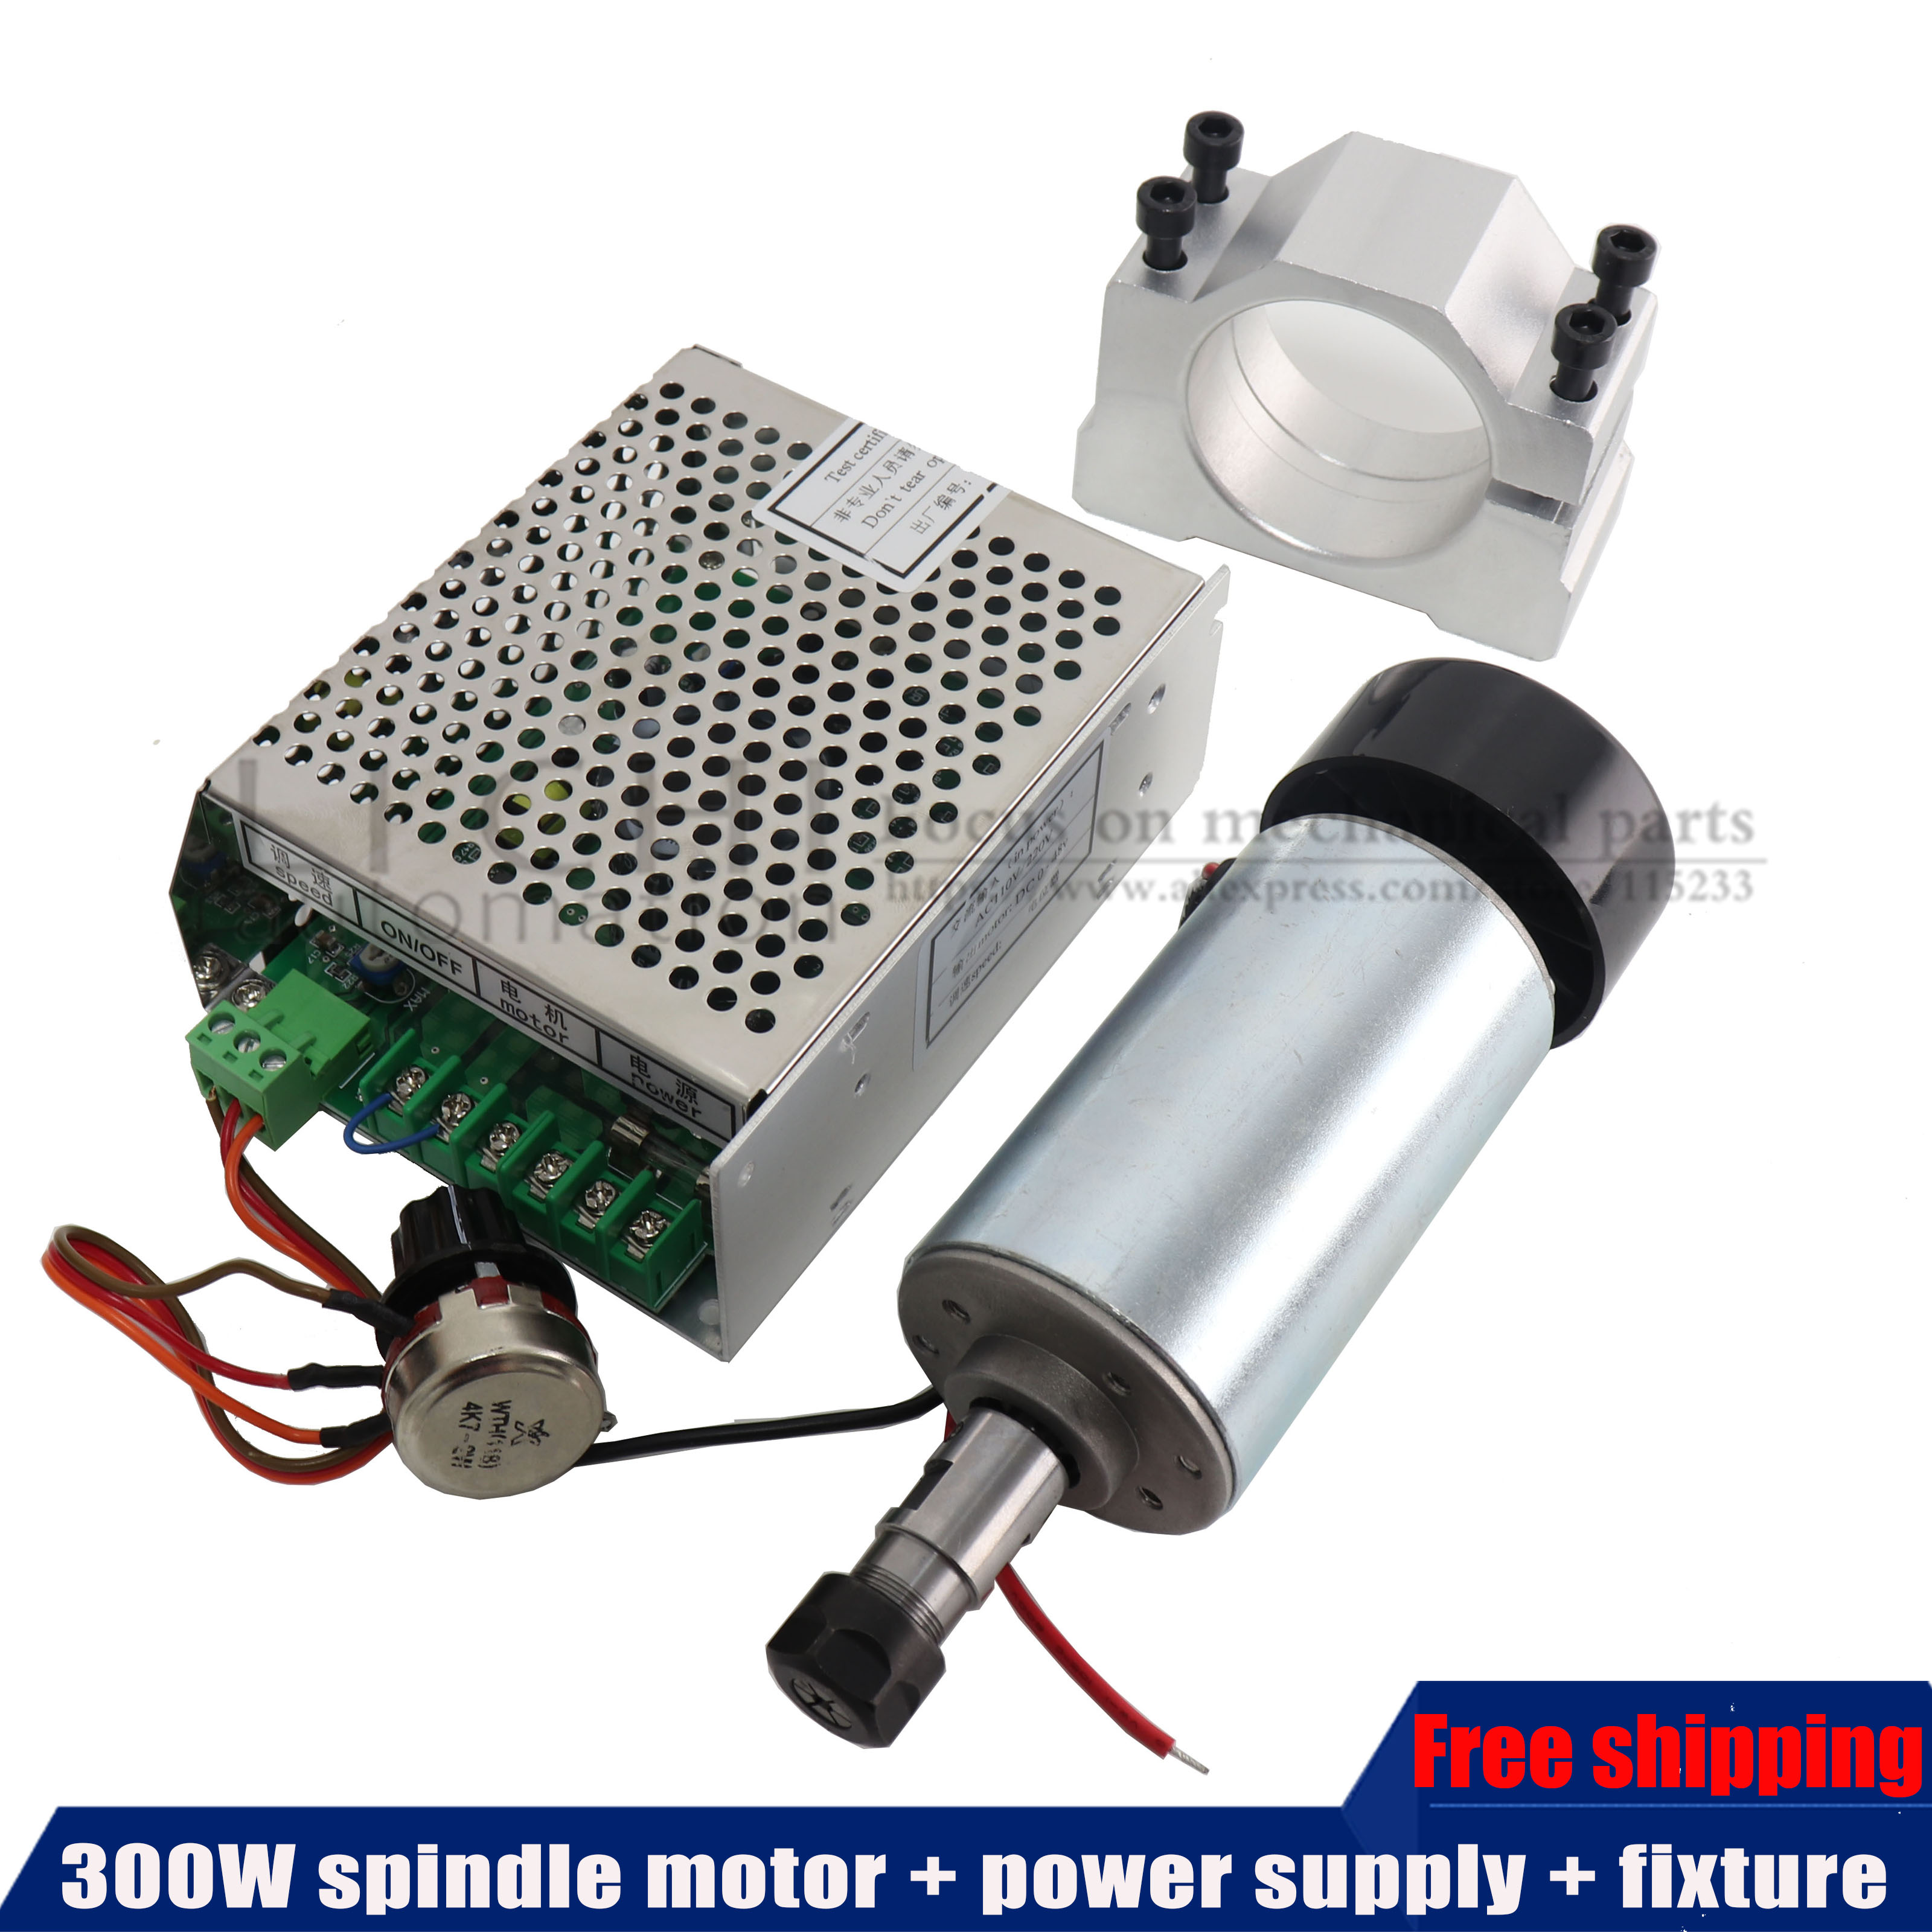 500W Spindle Motor 110V/220V Speed Governor for engraving Machine ER11 Collect 